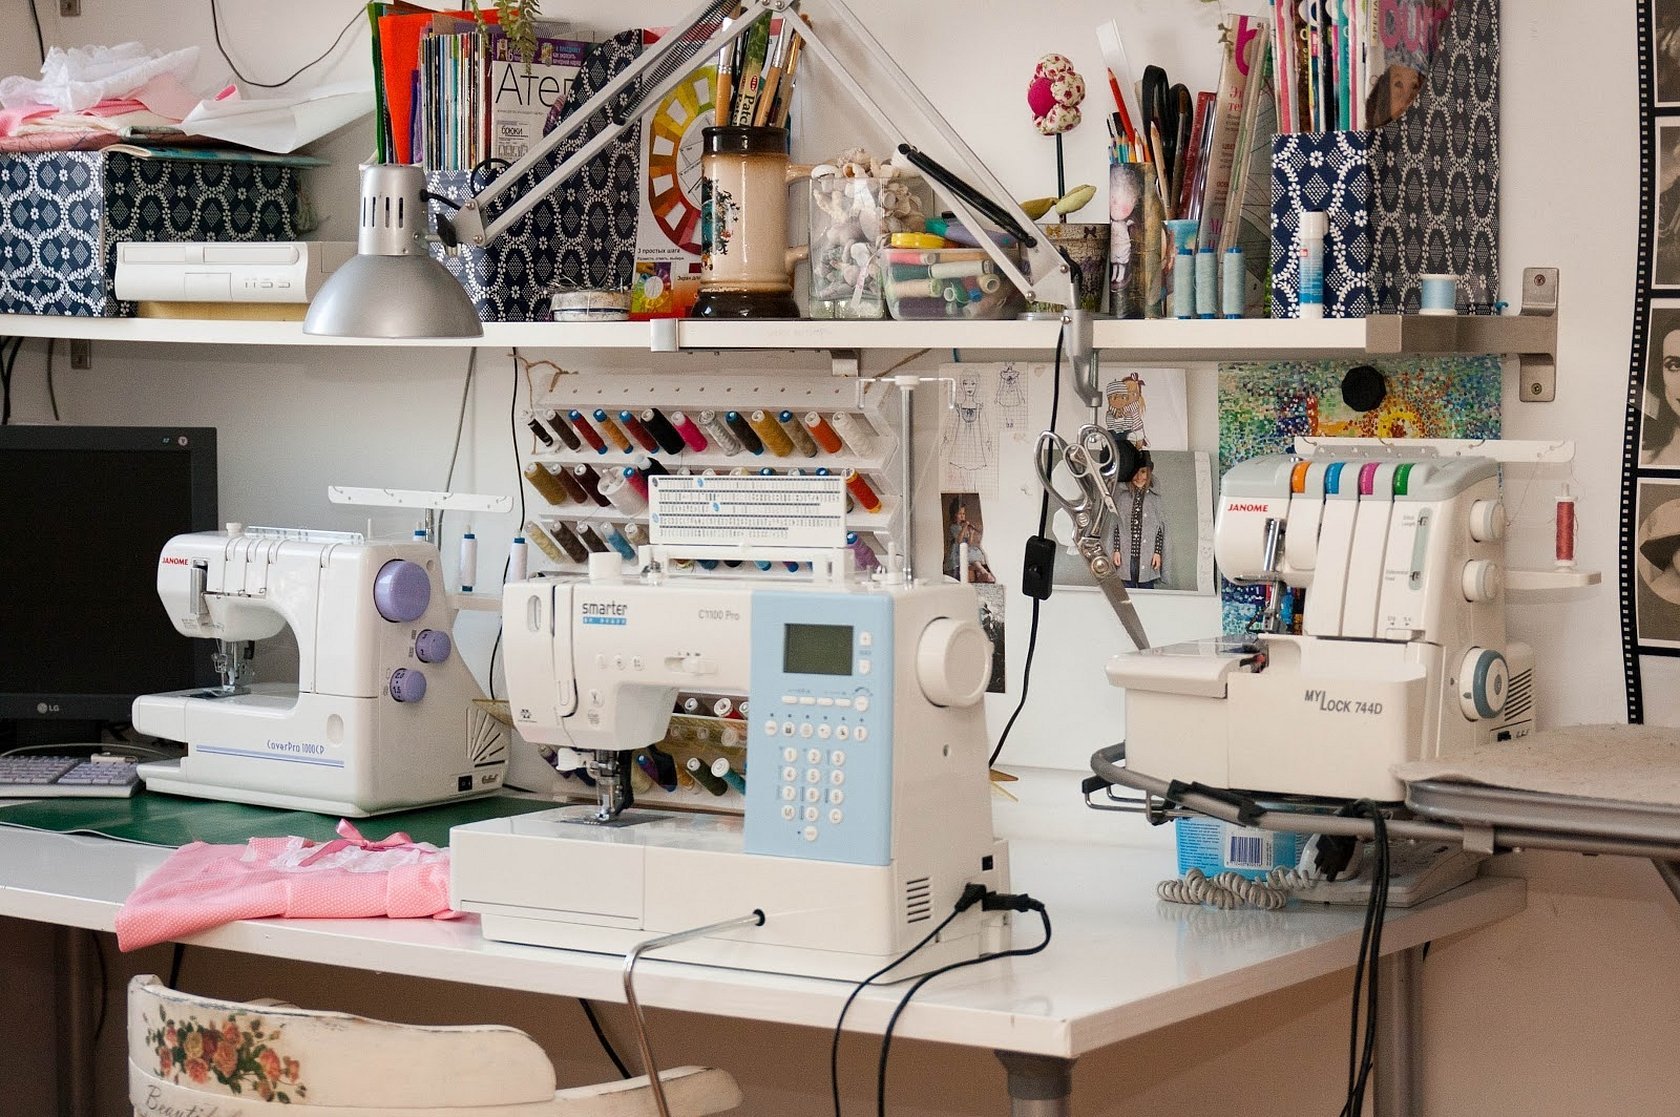 Сайт швейника. Оборудование для швейной мастерской. Швейное оборудование для ателье. Швейная машинка в мастерской. Инвентарь для ателье.